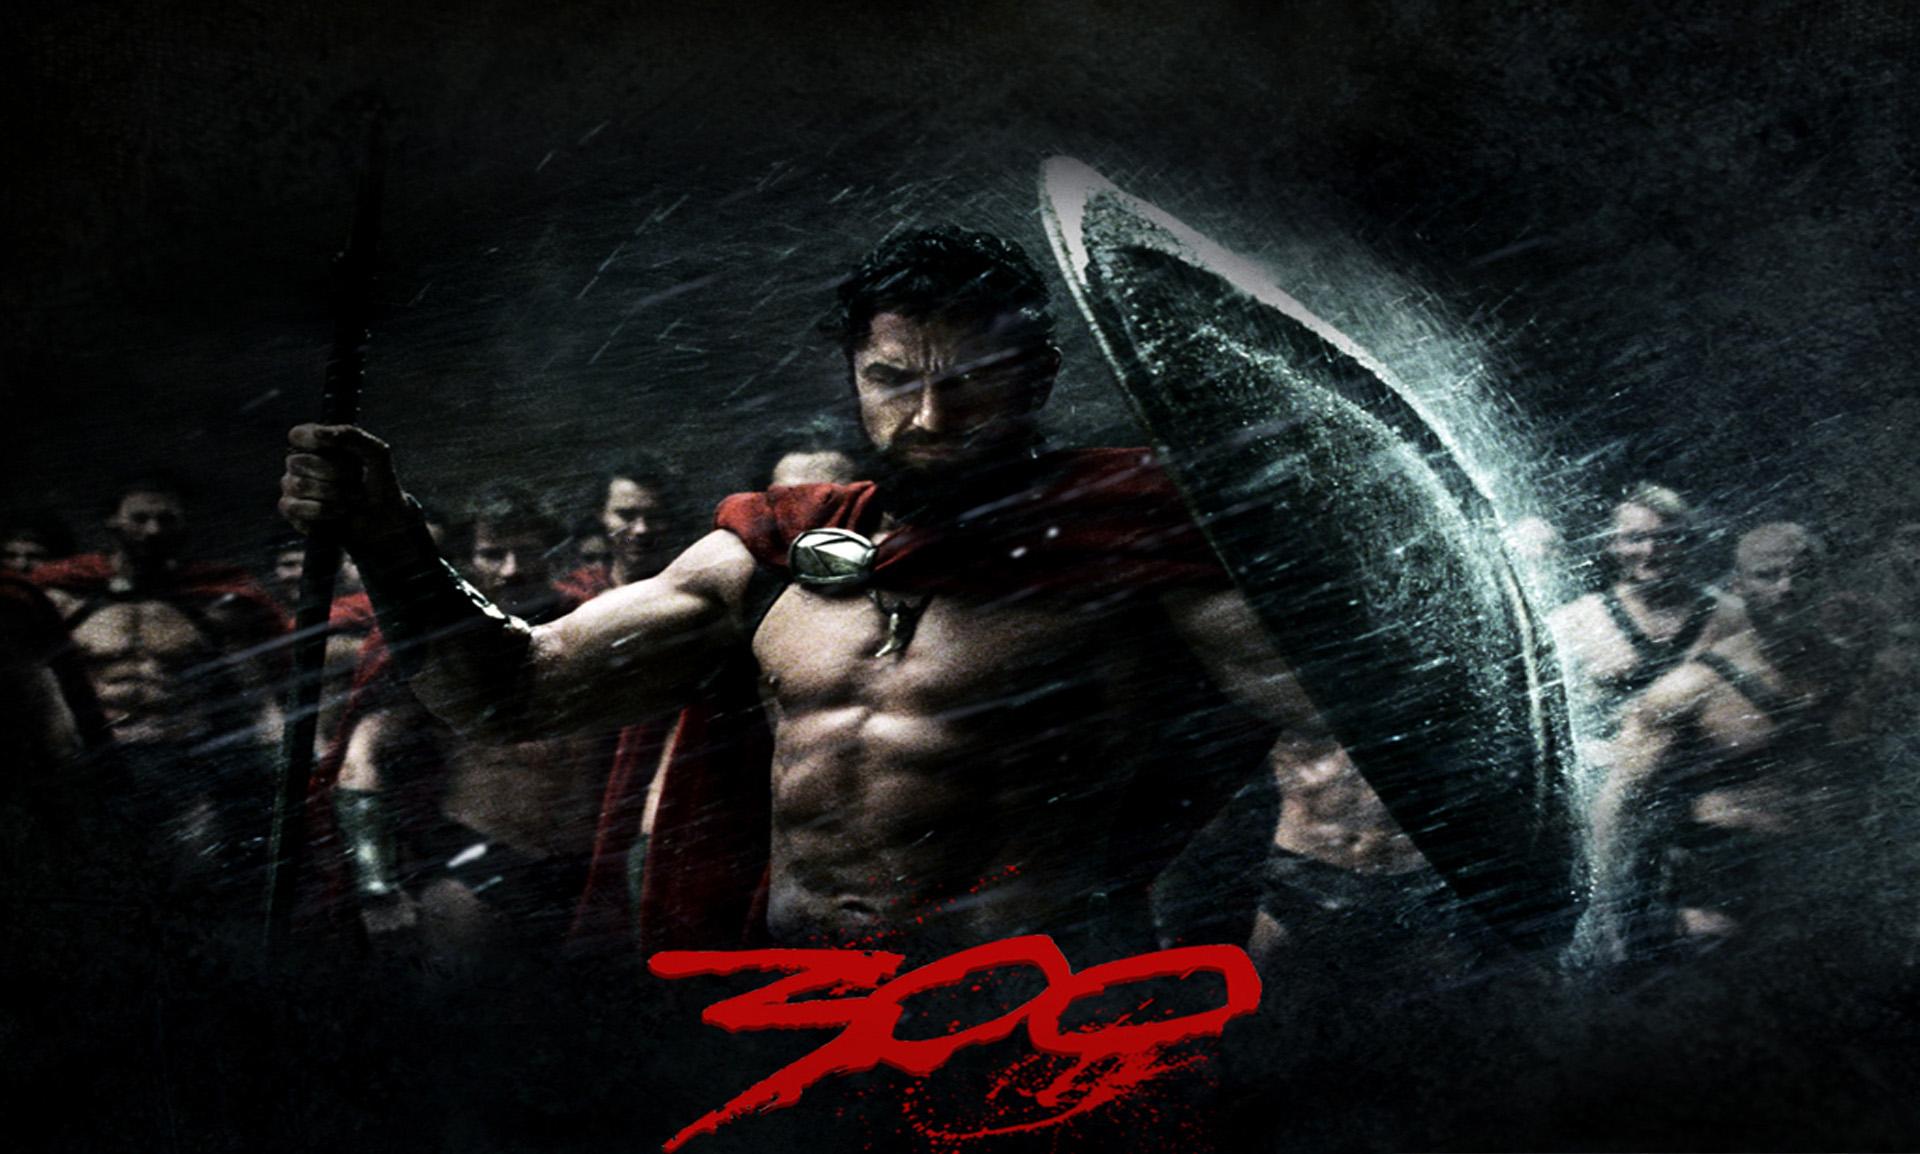 spartan, spartacus, 300 (movie), movie, 300, gerard butler, king leonidas, warrior